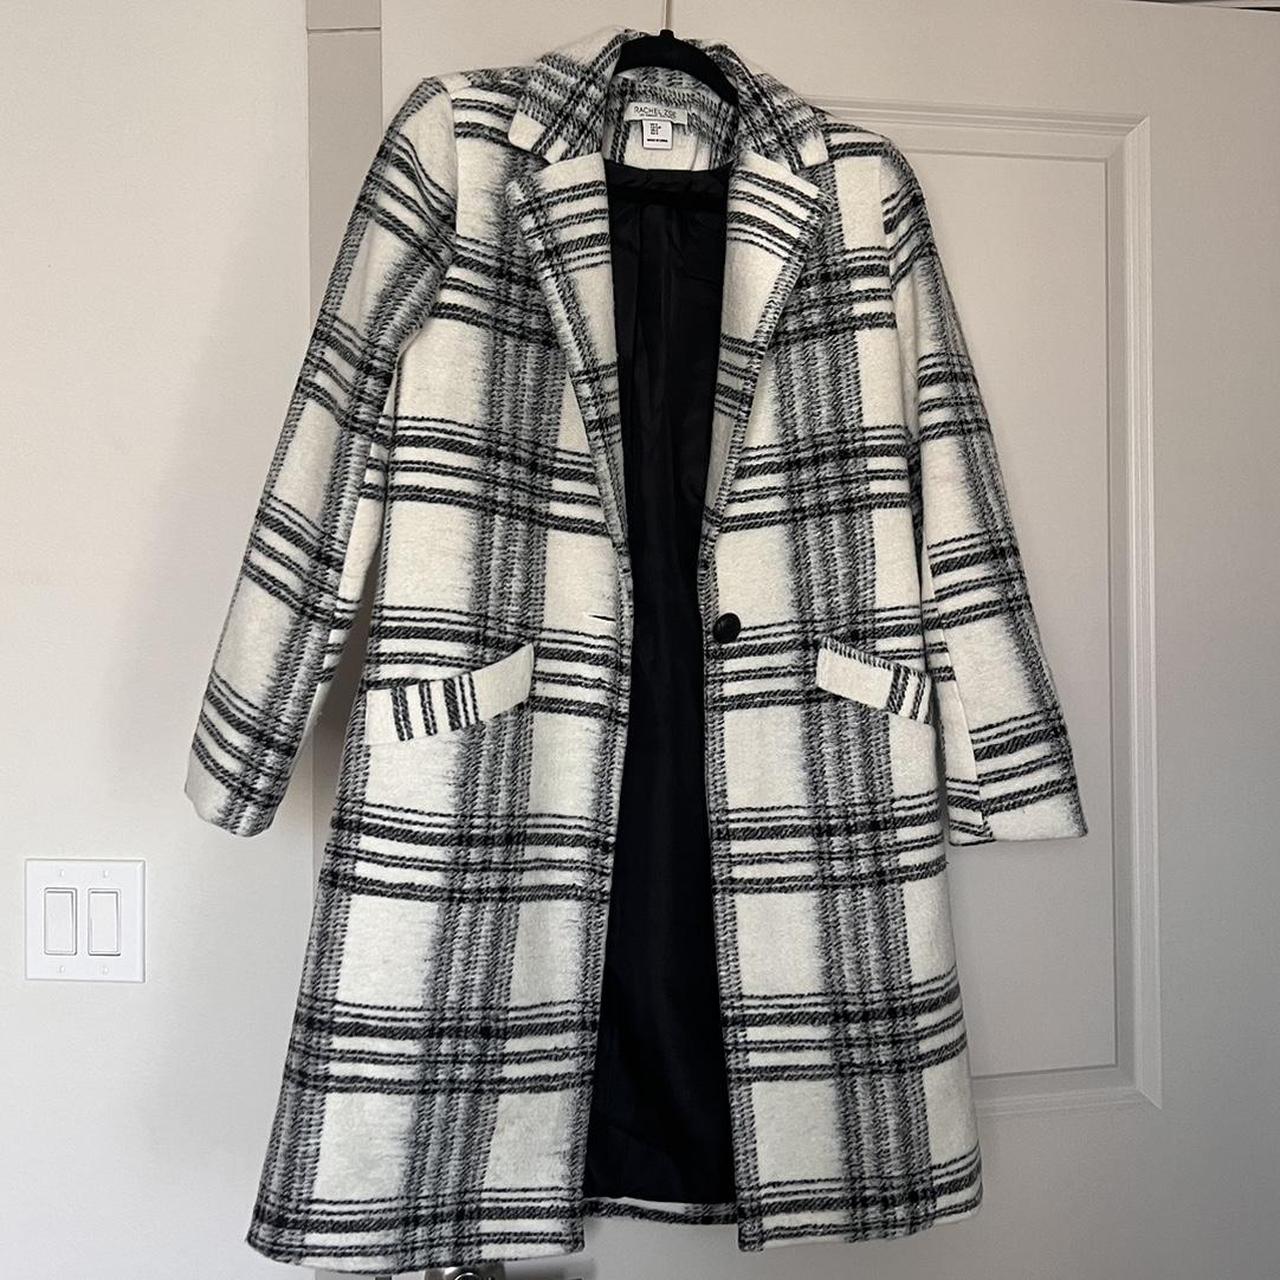 Rachel Zoe Women's Coat | Depop